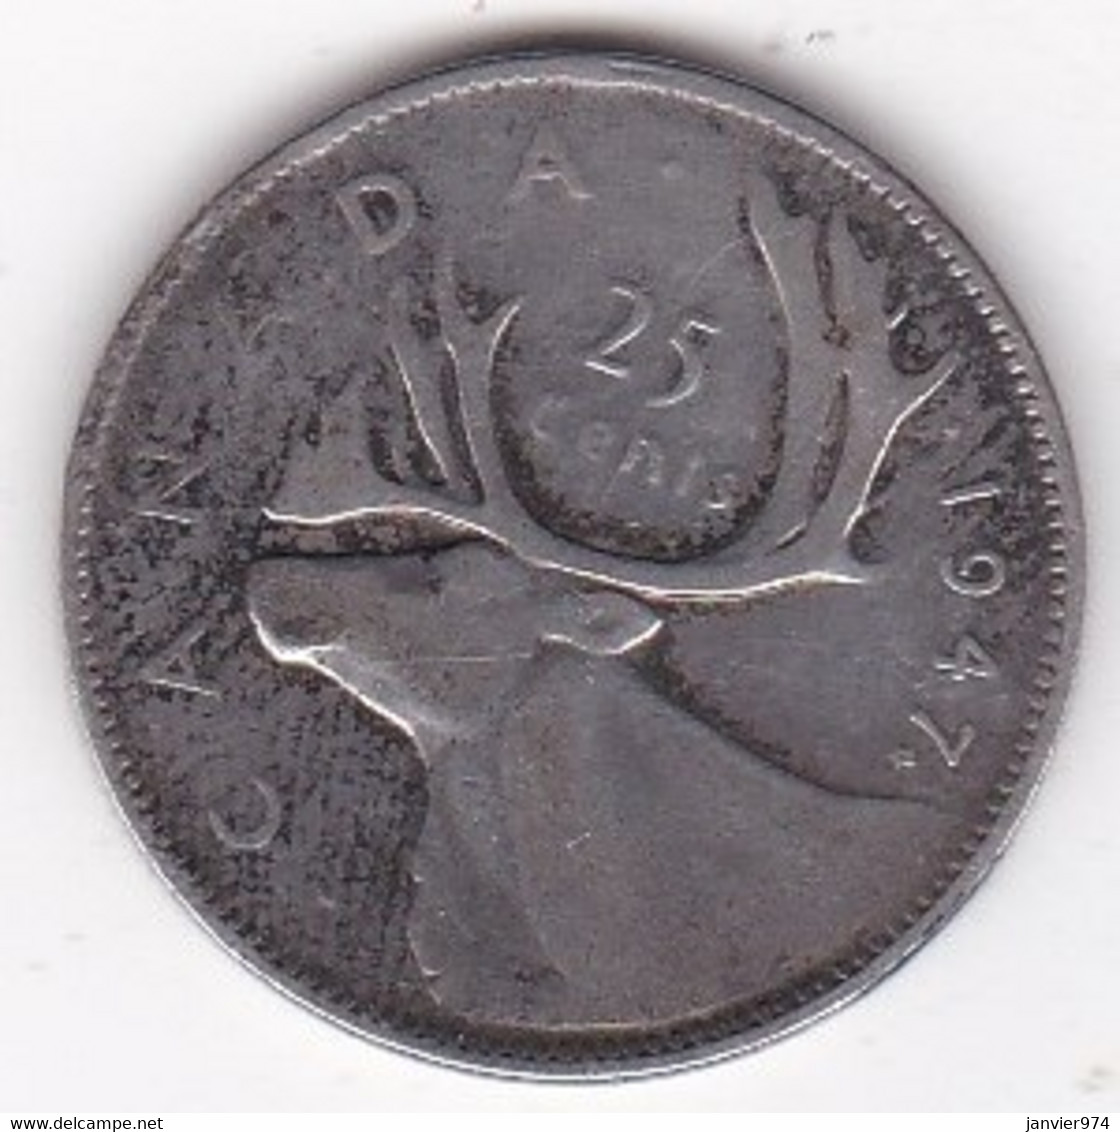 Canada 25 Cents 1947 Feuille D’Erable Apres La Date , George VI,  En Argent, - Canada